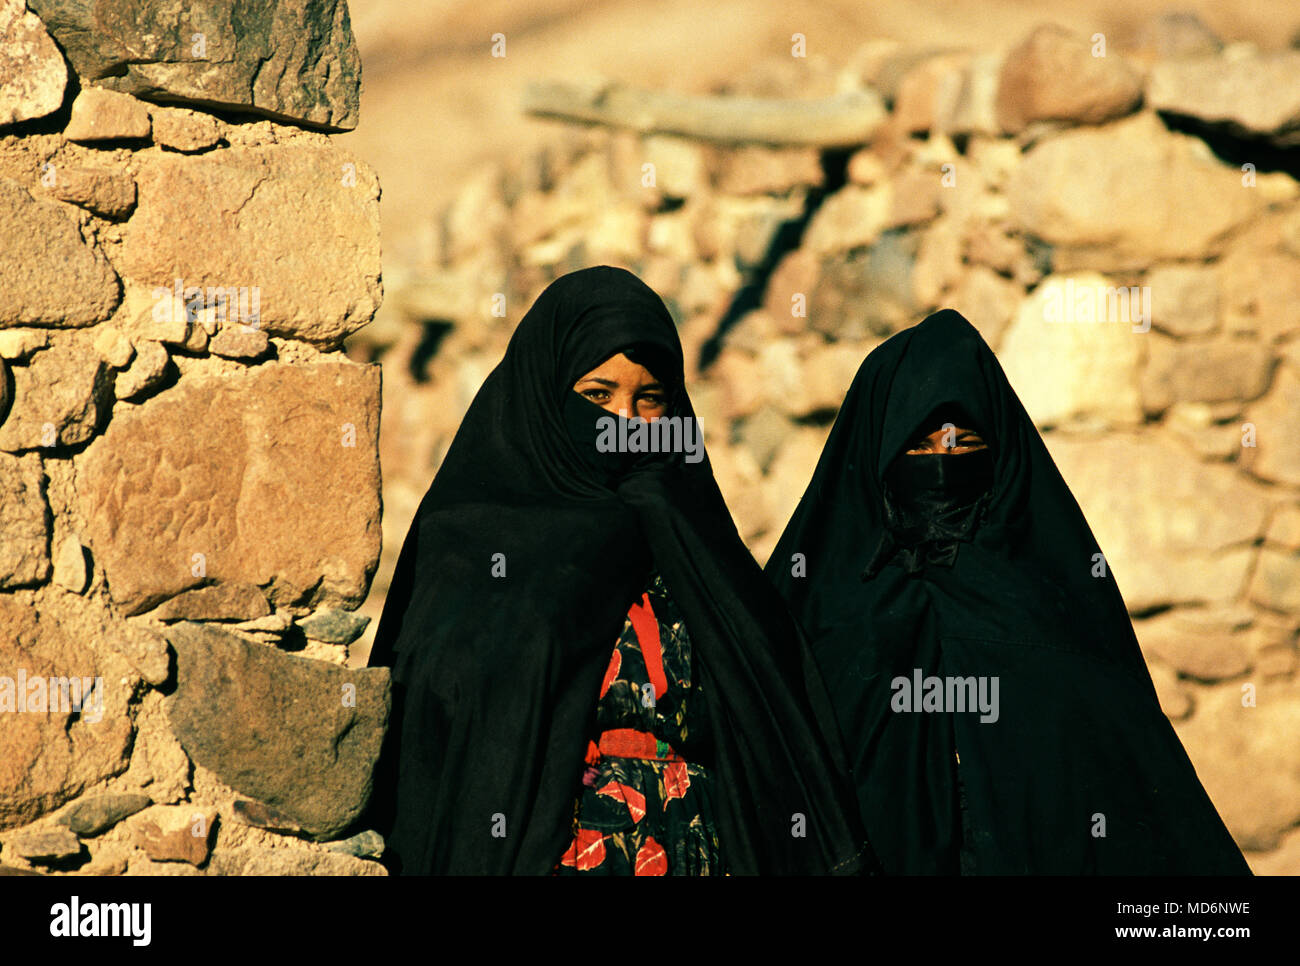 Sinaï, Égypte ; 2 filles berger bédouin Banque D'Images